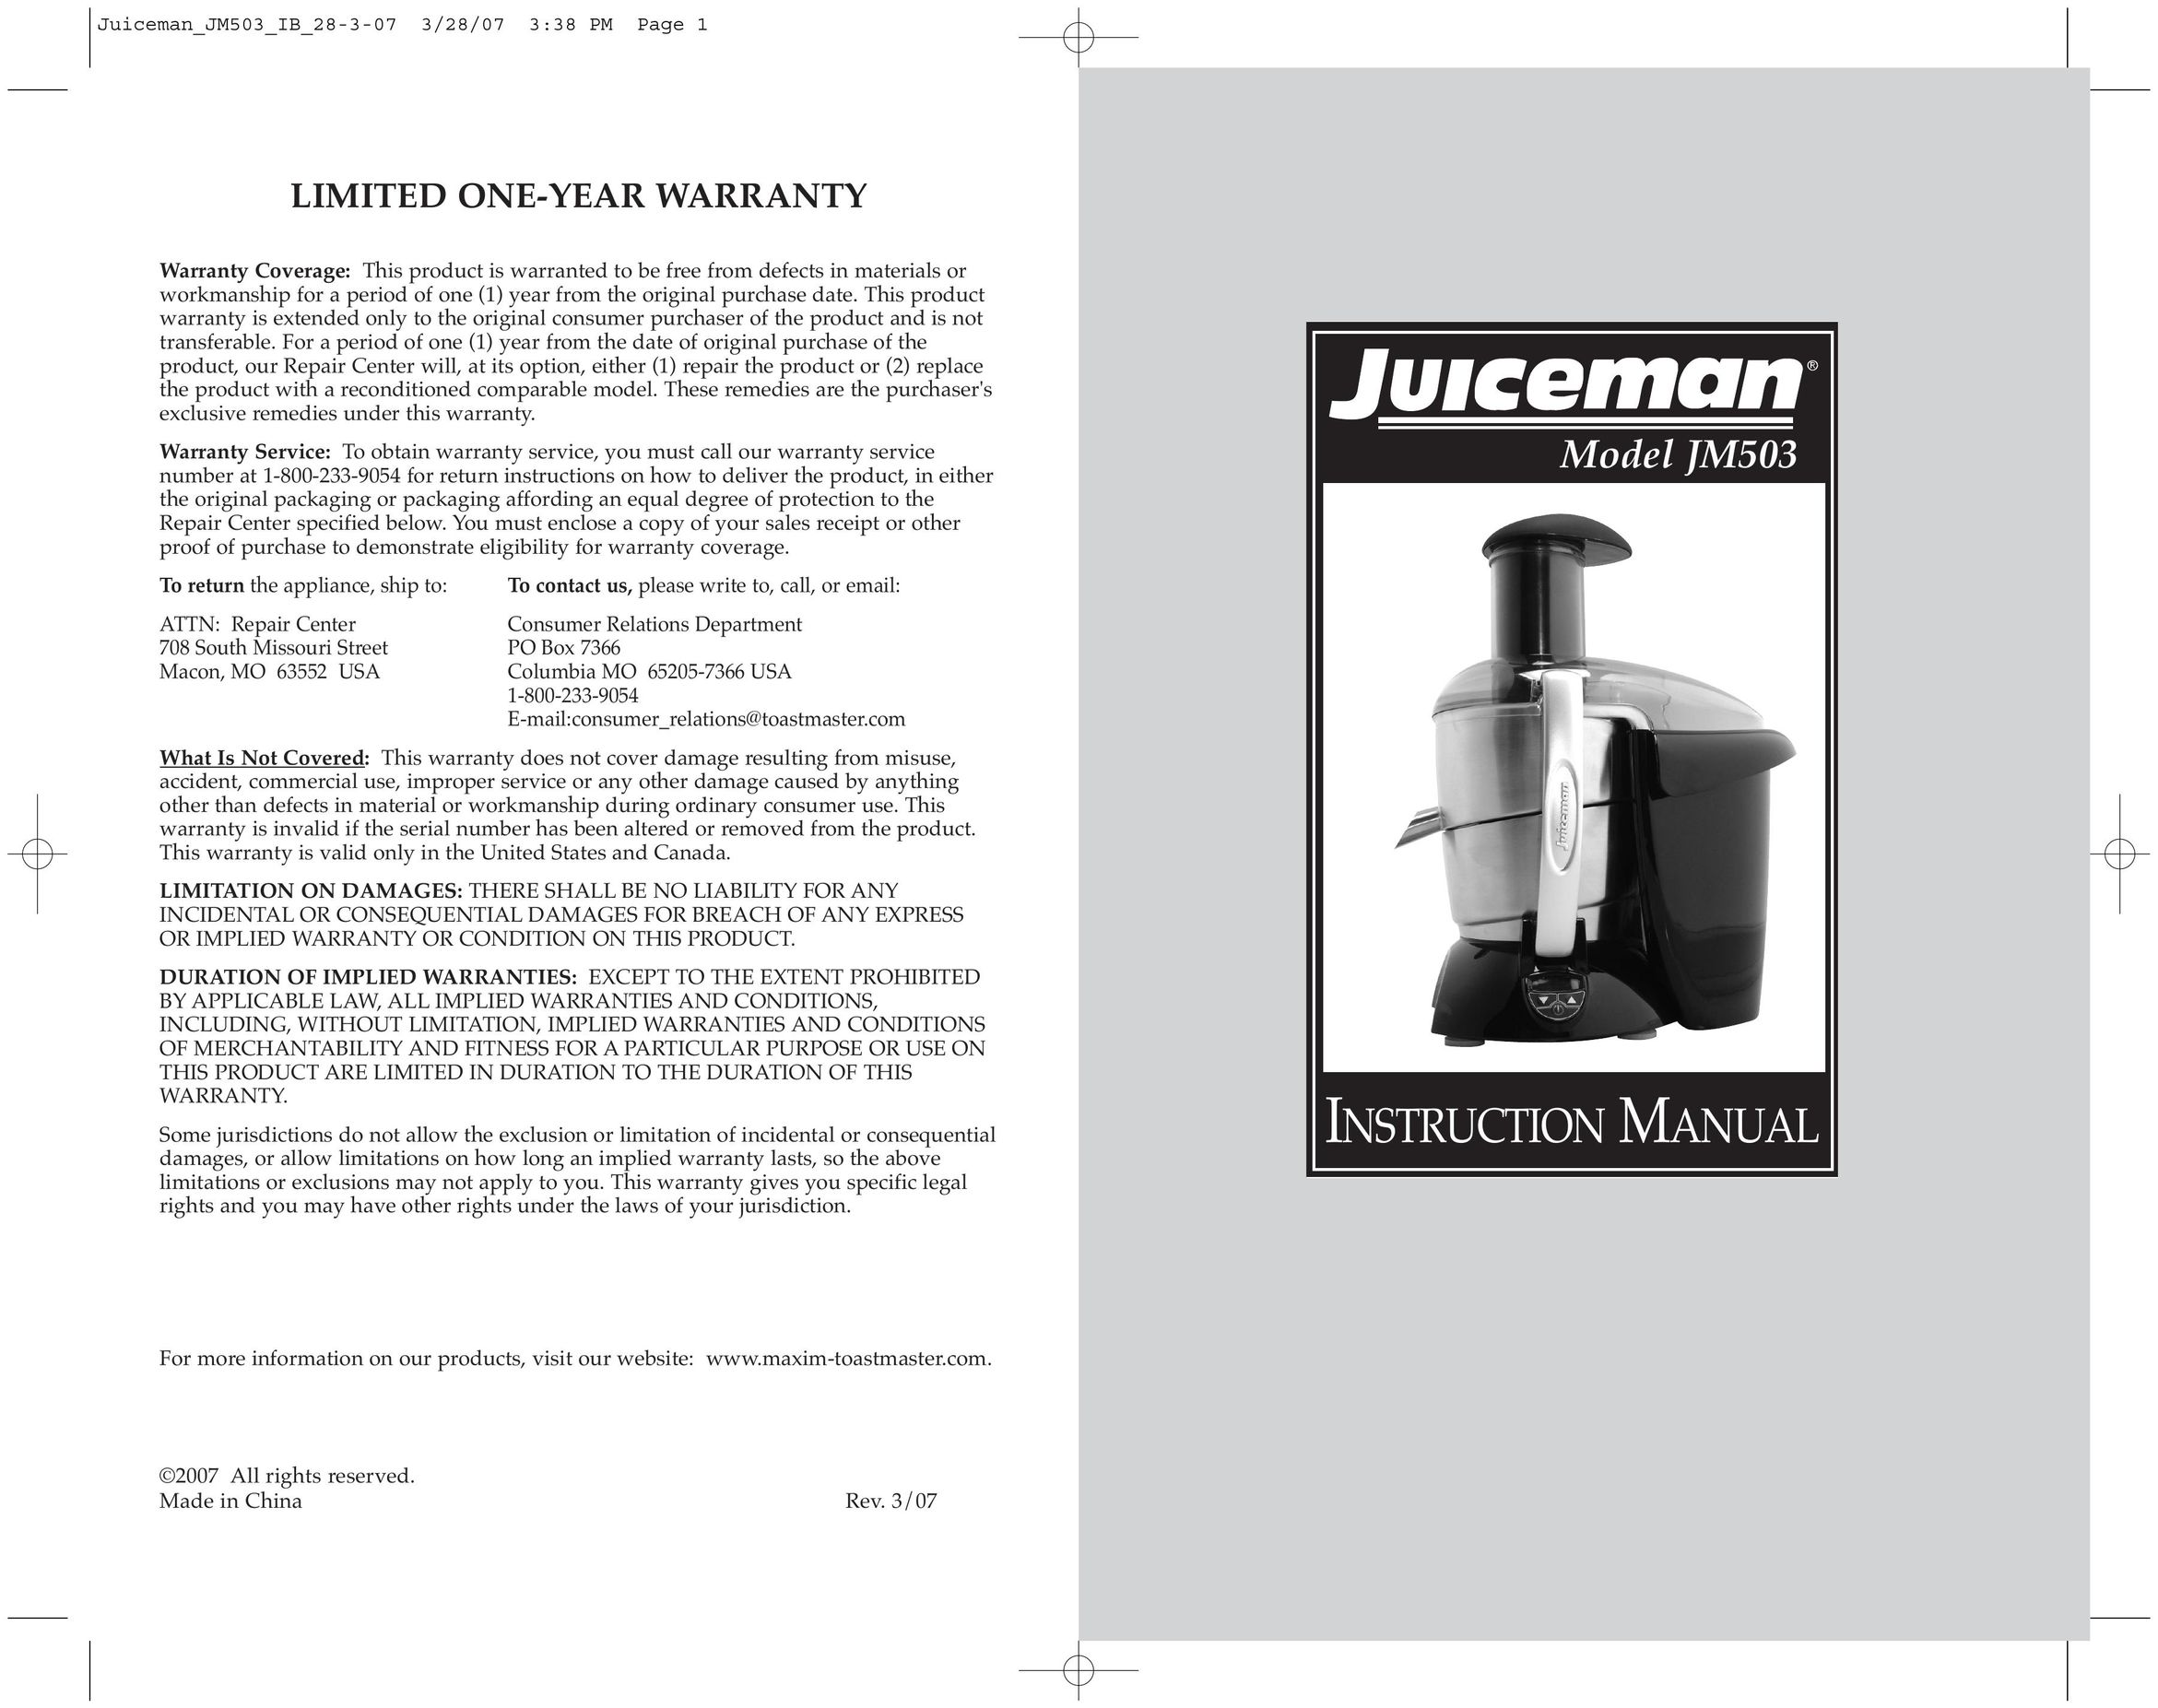 Toastmaster JM503 Juicer User Manual